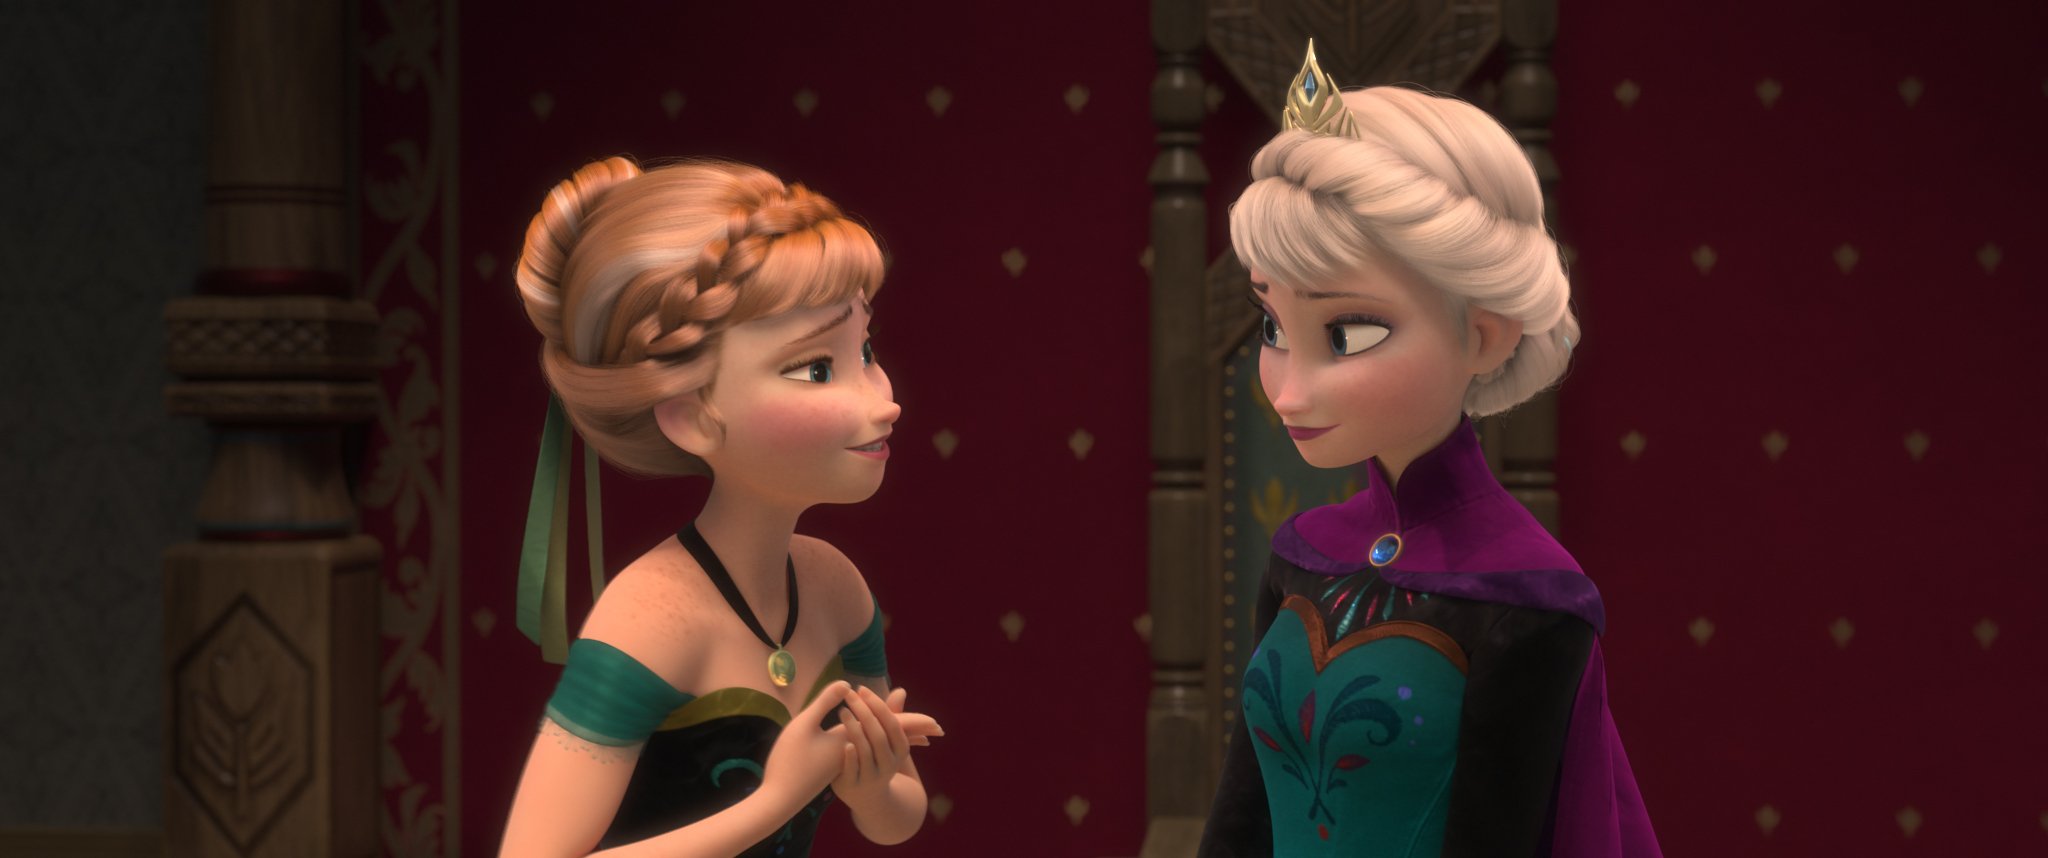 ディズニー スタジオ Oo アナと雪の女王 をご覧いただいたみなさま 最後までお付き合いいただきありがとうございました アナやエルサ オラフと一緒に楽しく歌えましたか アナ雪 T Co Z2jttrl0ke Twitter